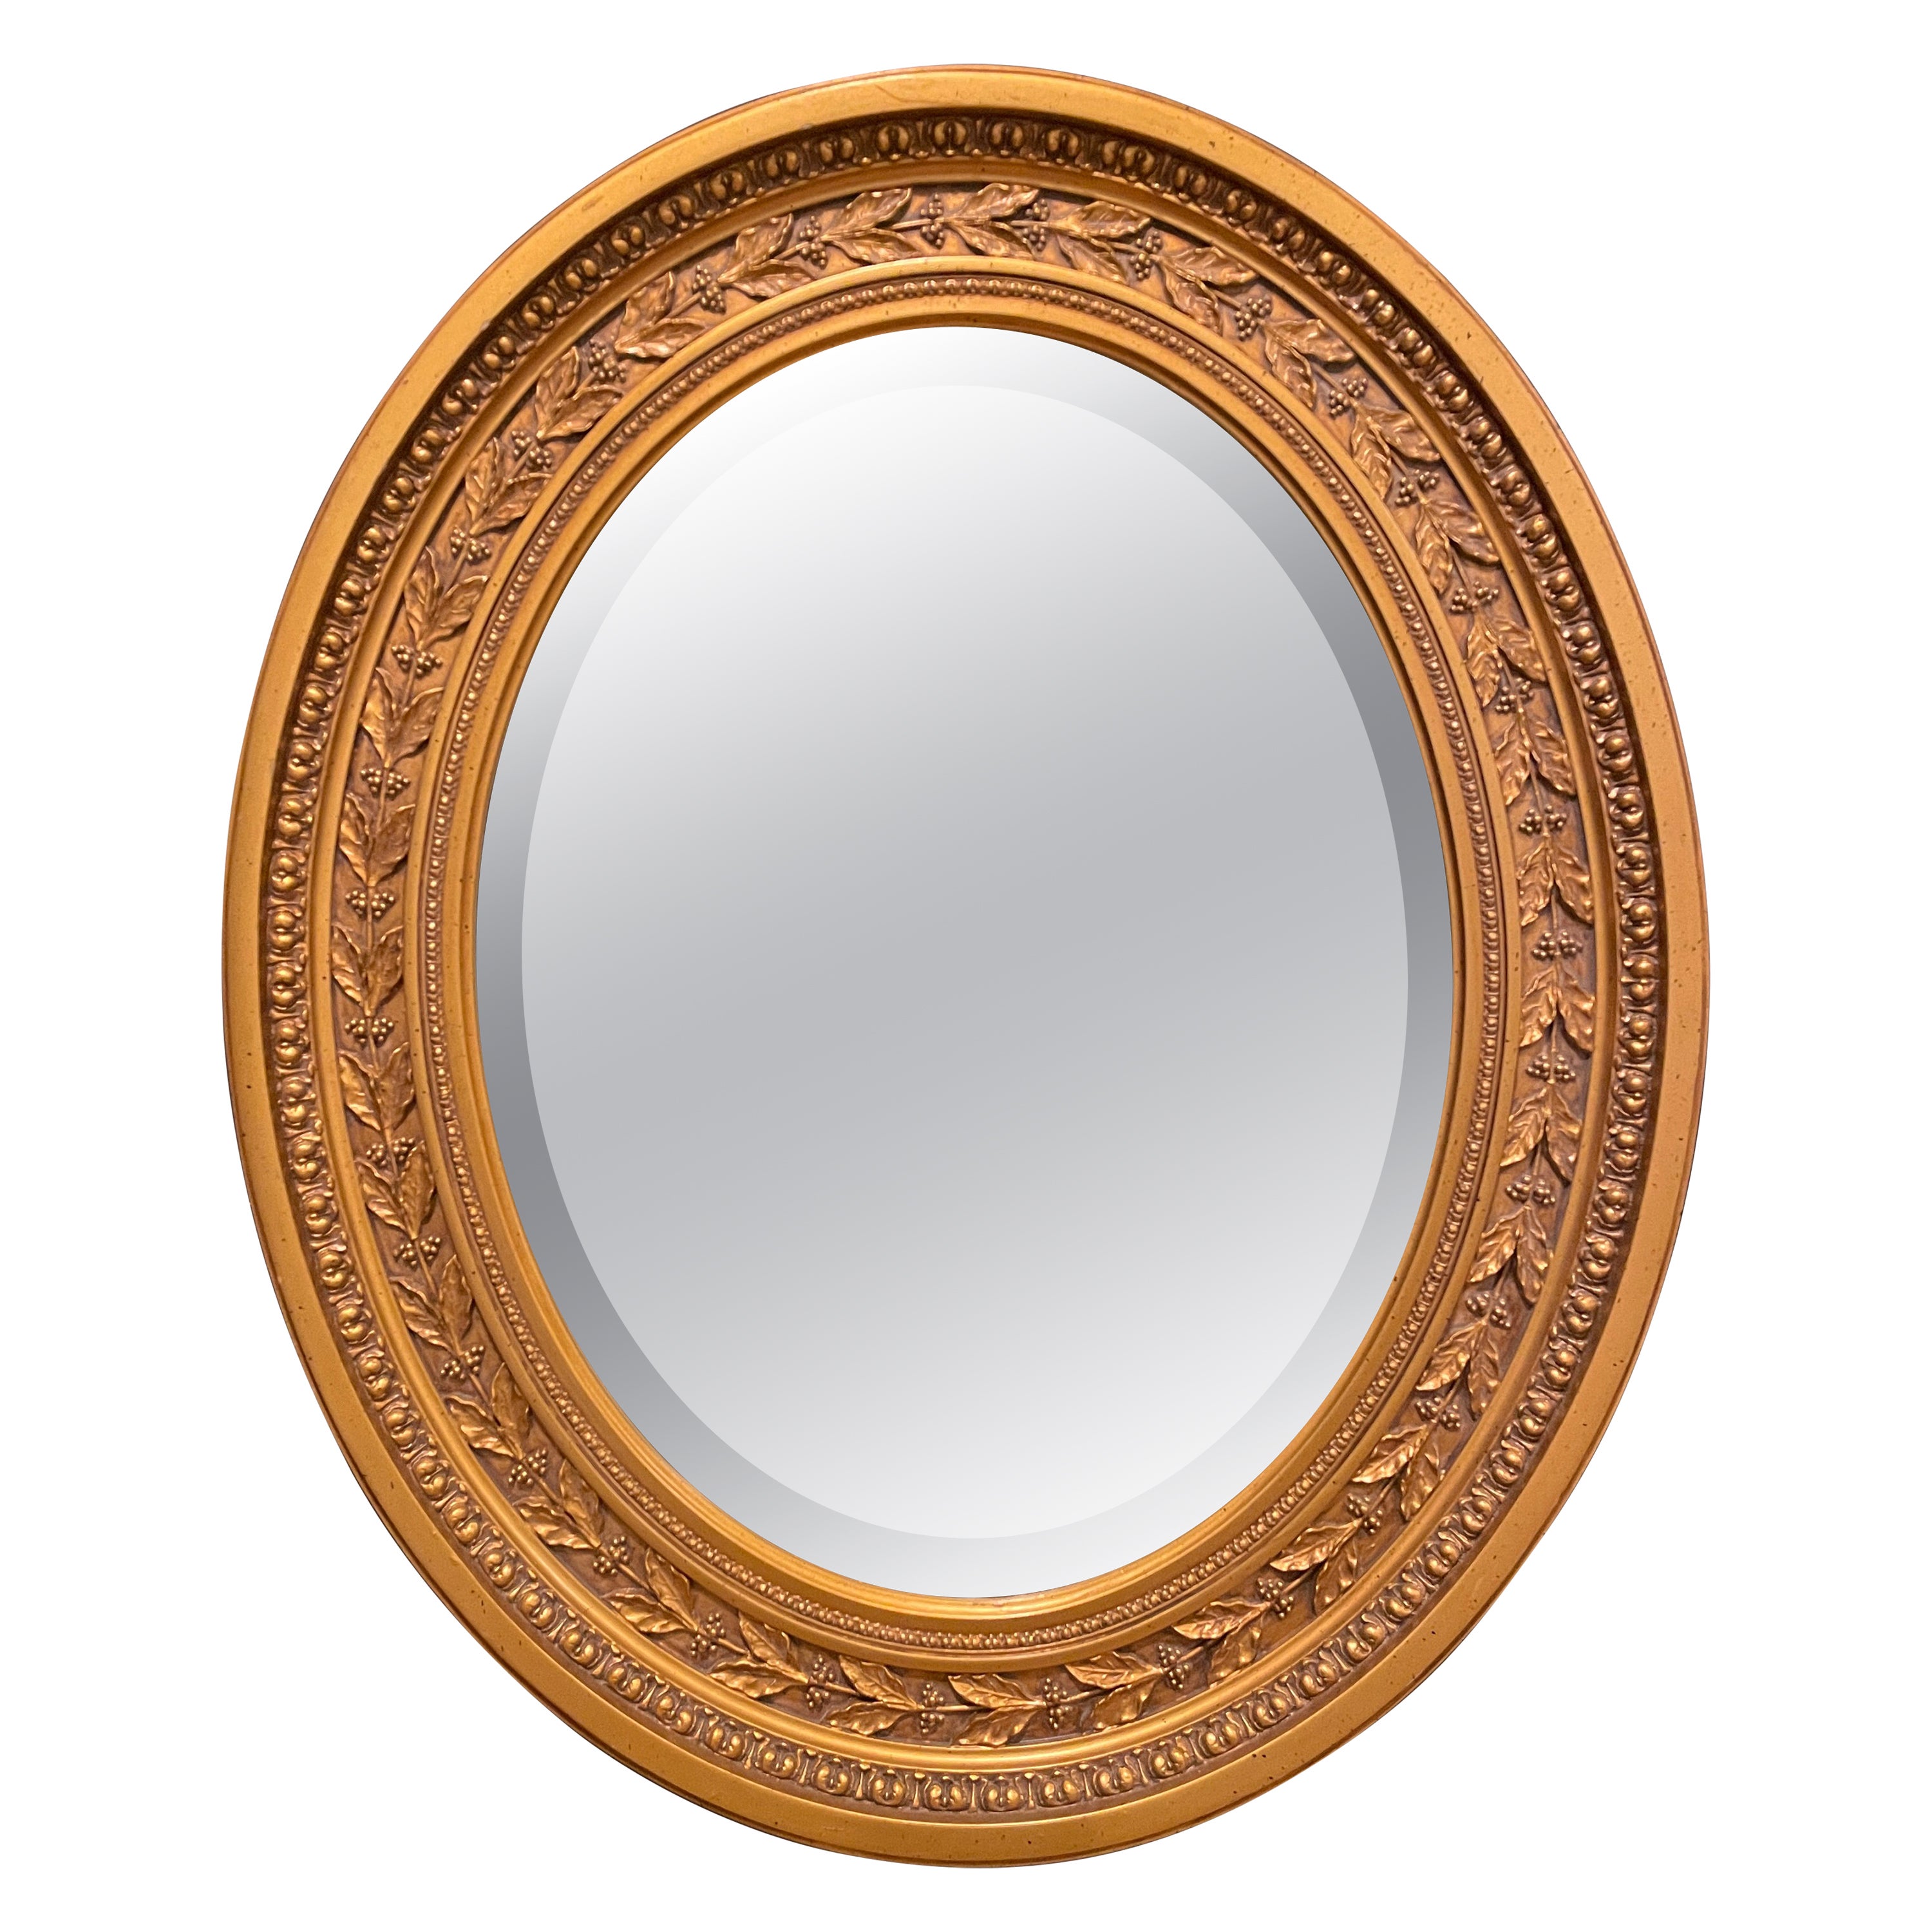 Ovaler vergoldeter Spiegel im Regency-Stil